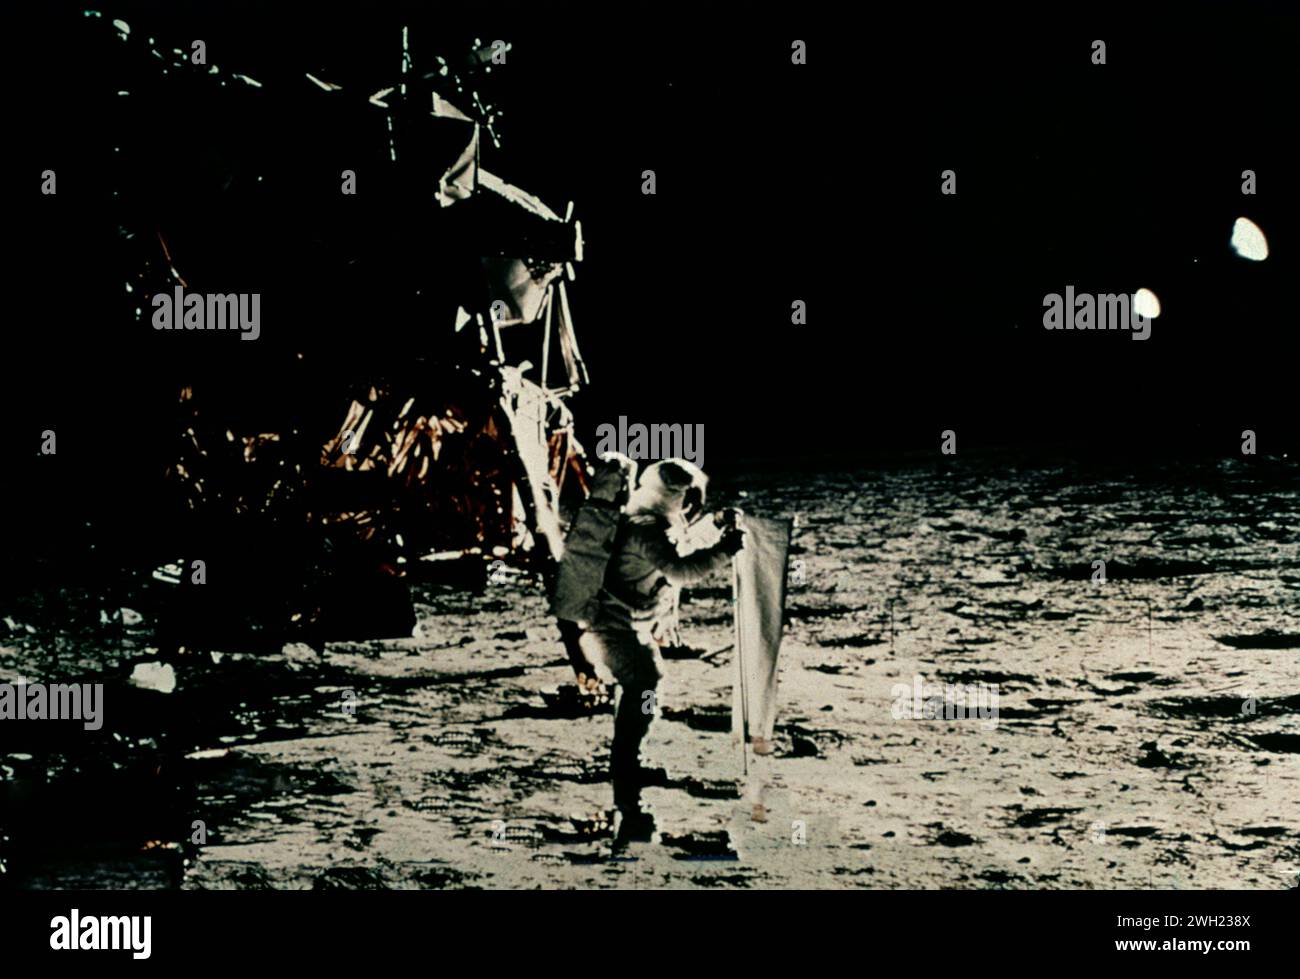 L'austronaute américain Neil Armstrong marche sur la surface de la Lune lors de la mission Apollo 11, 1969 Banque D'Images